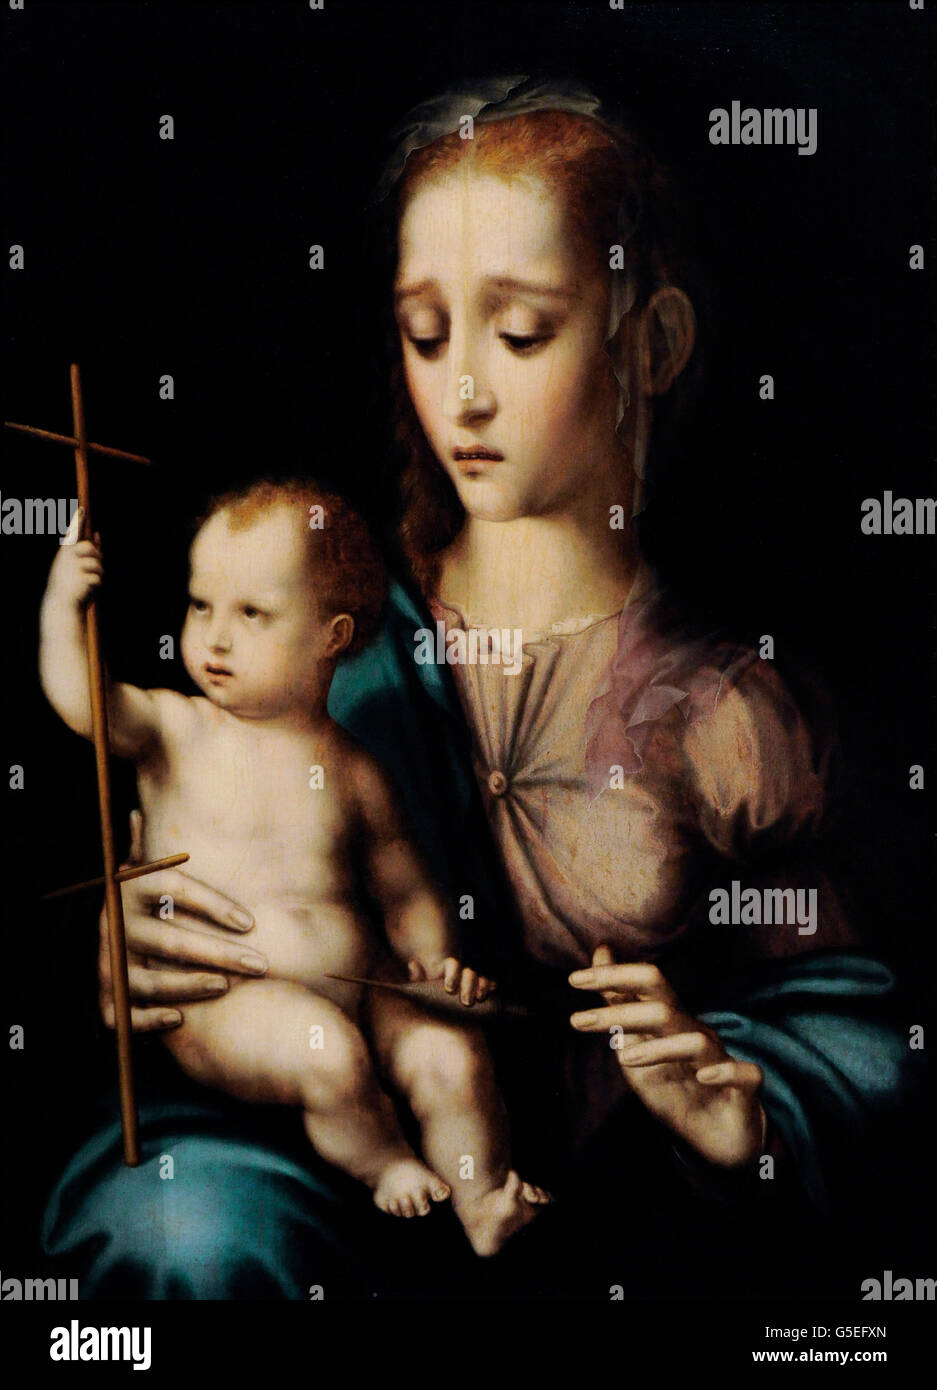 Luis de Morales (1509-1585). Spanischer Maler der Renaissance. Madonna und Kind mit einem kreuzförmigen Spinnrocken, 1570. Die Eremitage. Sankt Petersburg. Russland. Stockfoto